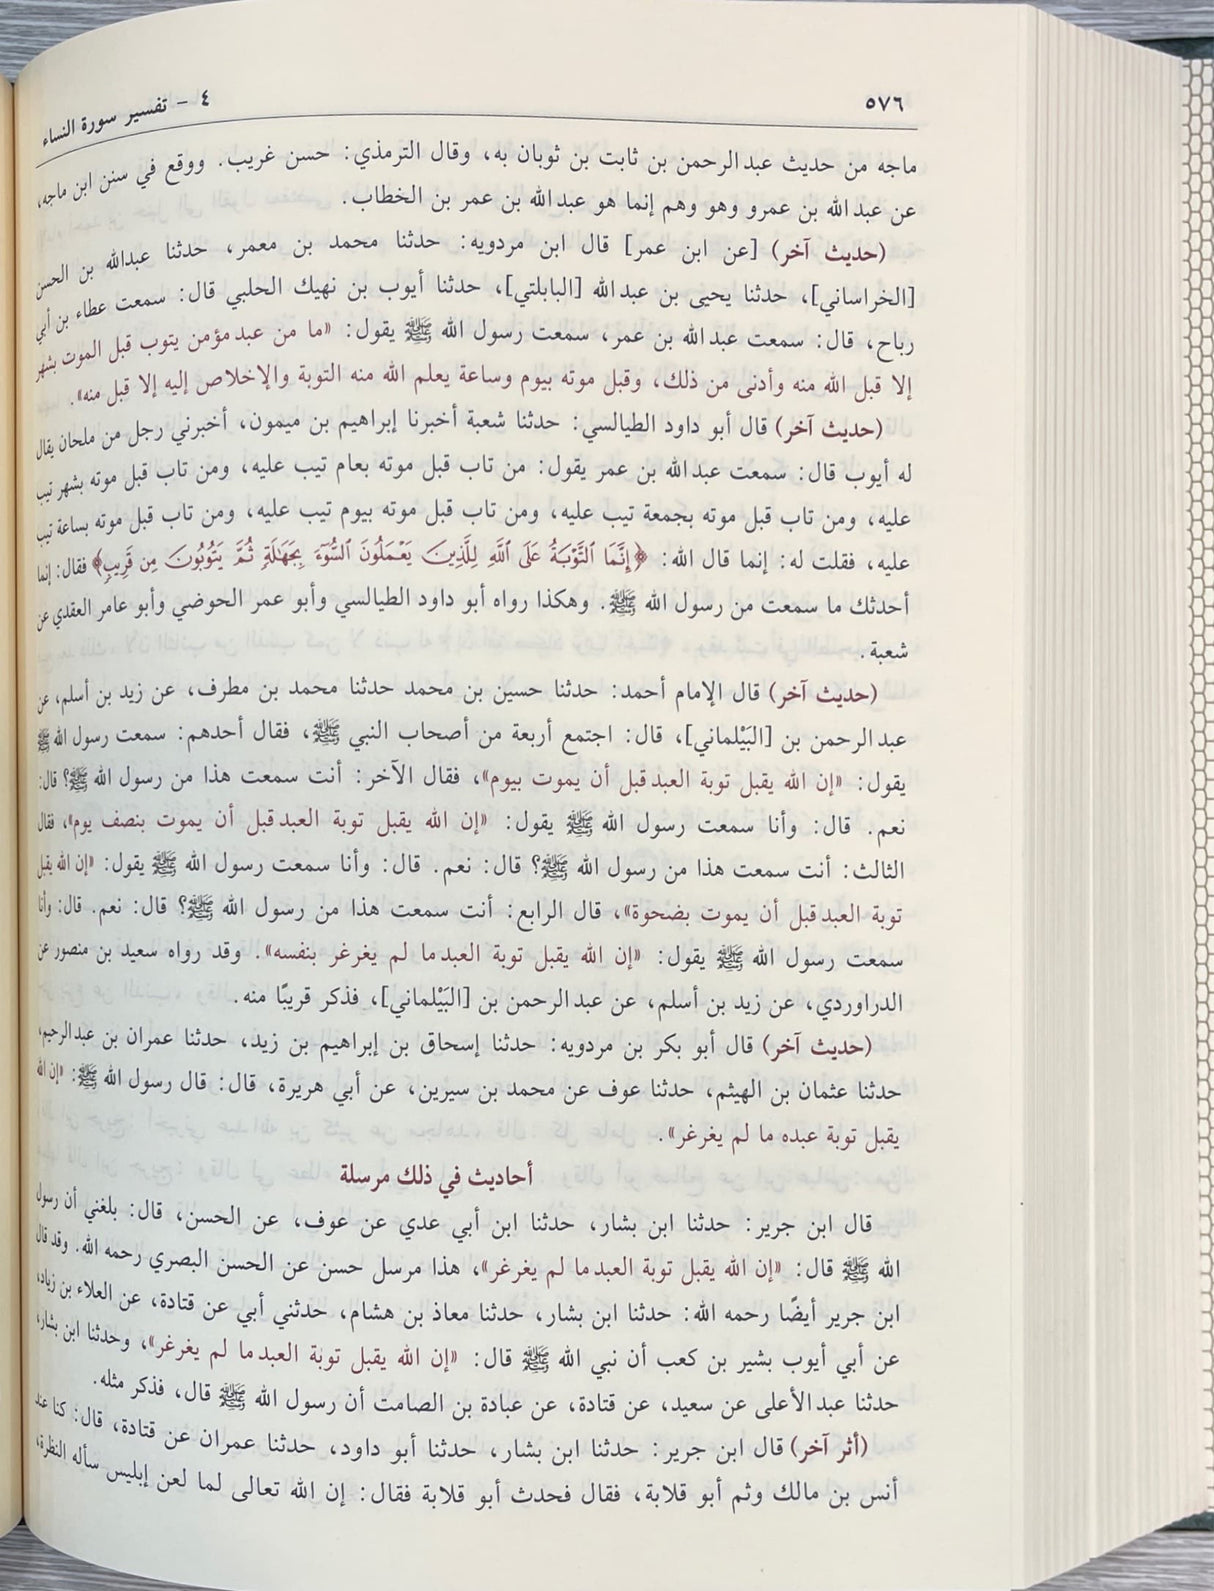 تفسير القران العظيم   Tafsir Al Quran Al Atheem Yellow Pages (4 Volume Set) (Darussalam)